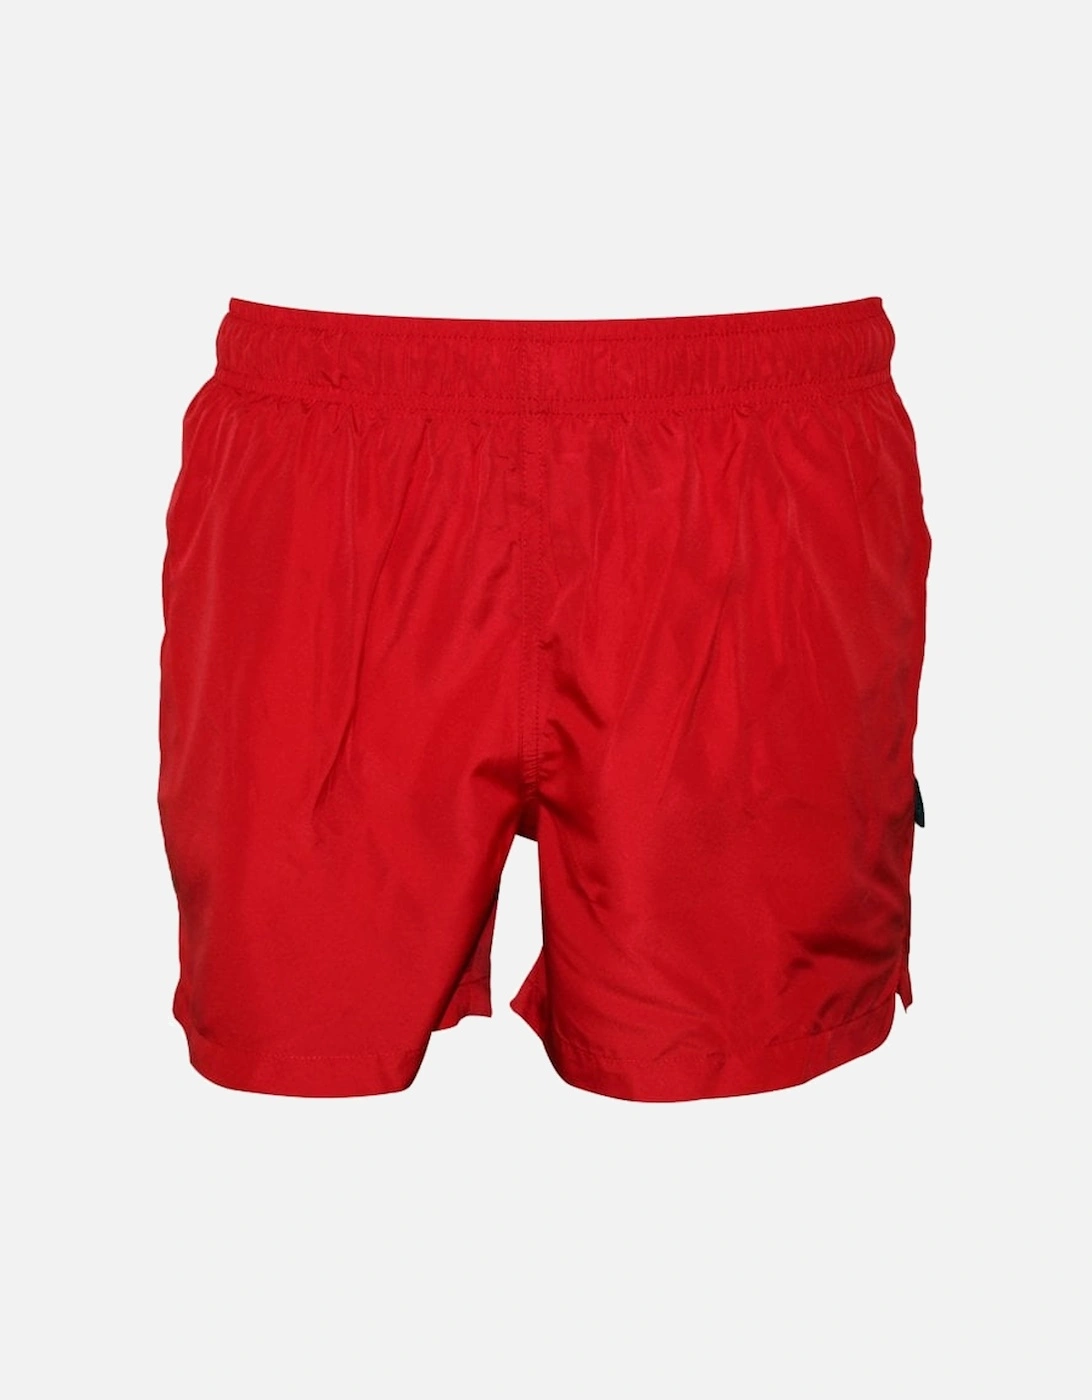 Classic Beach Swim Shorts, Red, 5 of 4